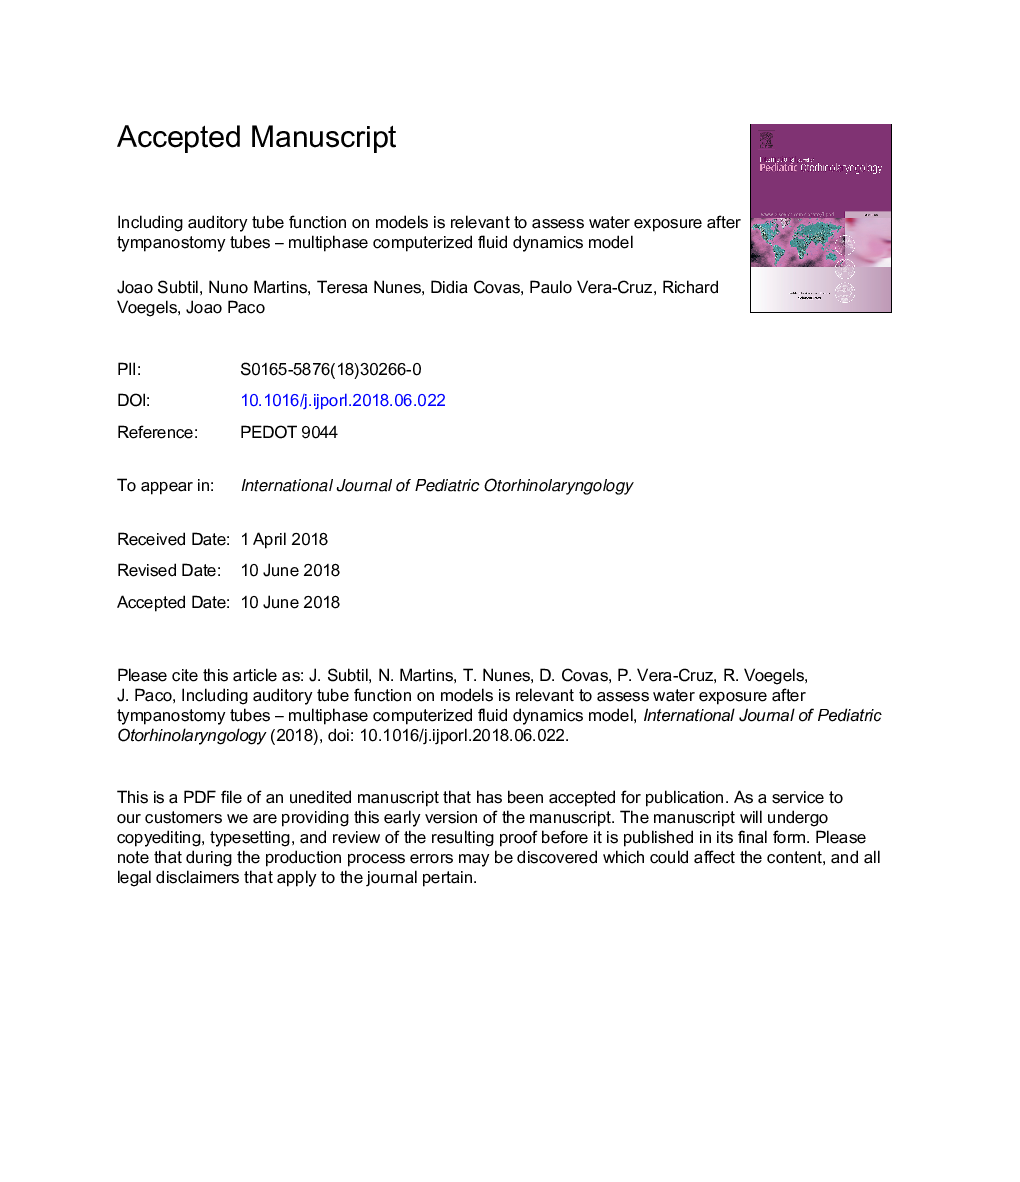 از جمله عملکرد لوله های شنوایی در مدل های مربوط به ارزیابی قرار گرفتن در معرض آب پس از لوله های تیمپانوستومی مربوط به مدل چند مرحله کامپیوتری مدل دینامیکی مایع 